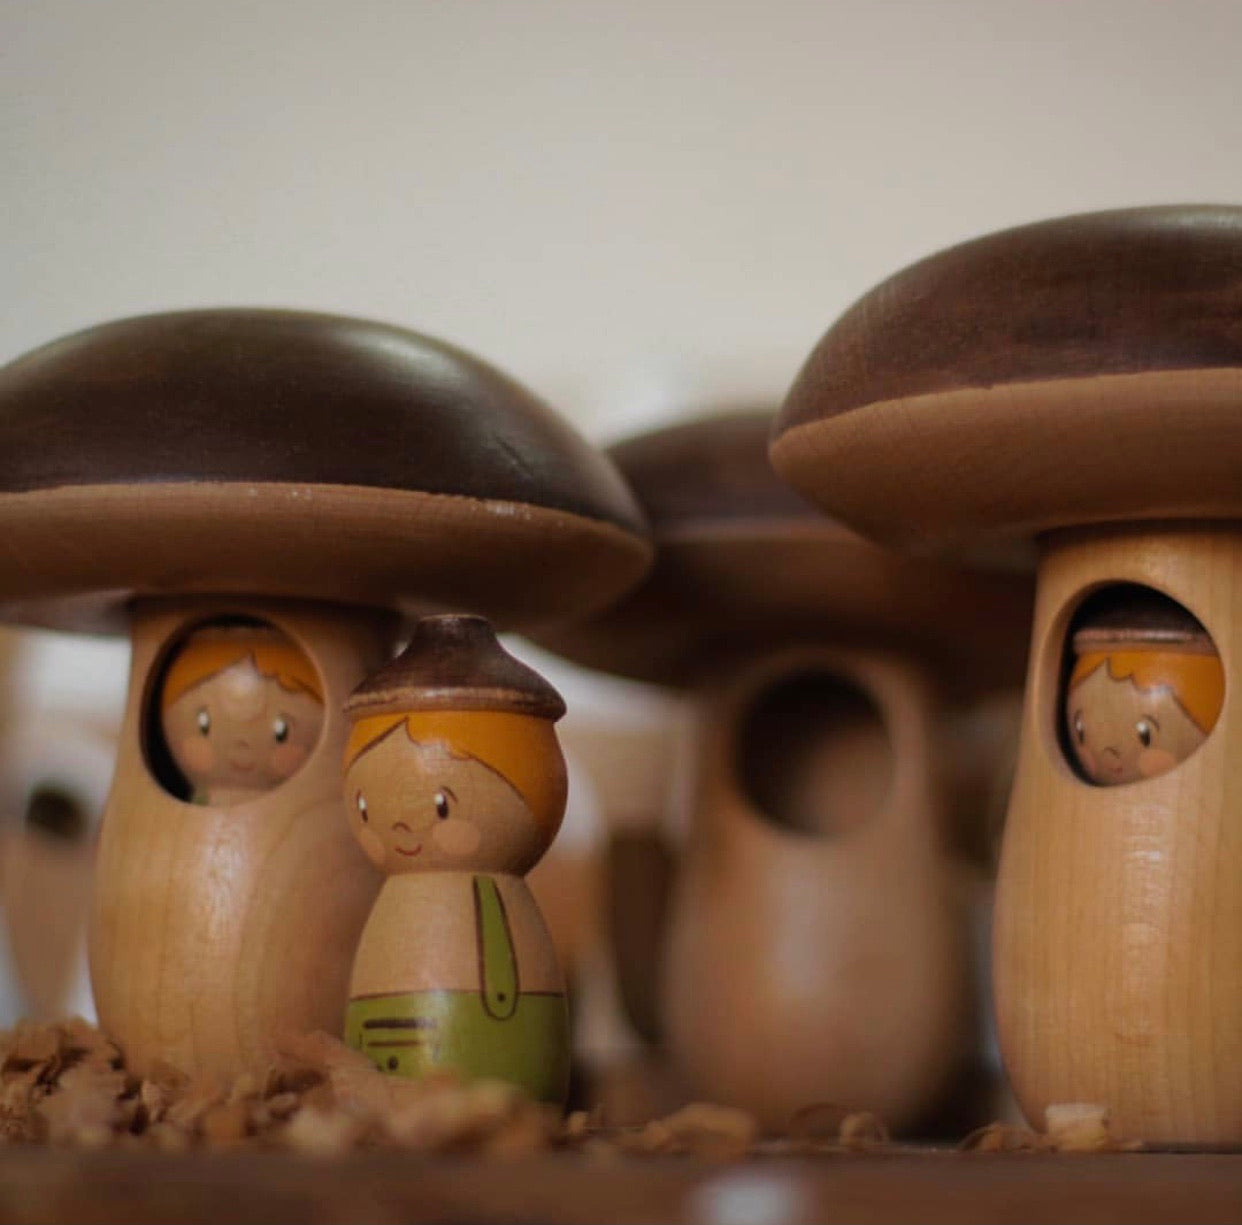 Mushroom House with Acorn Doll